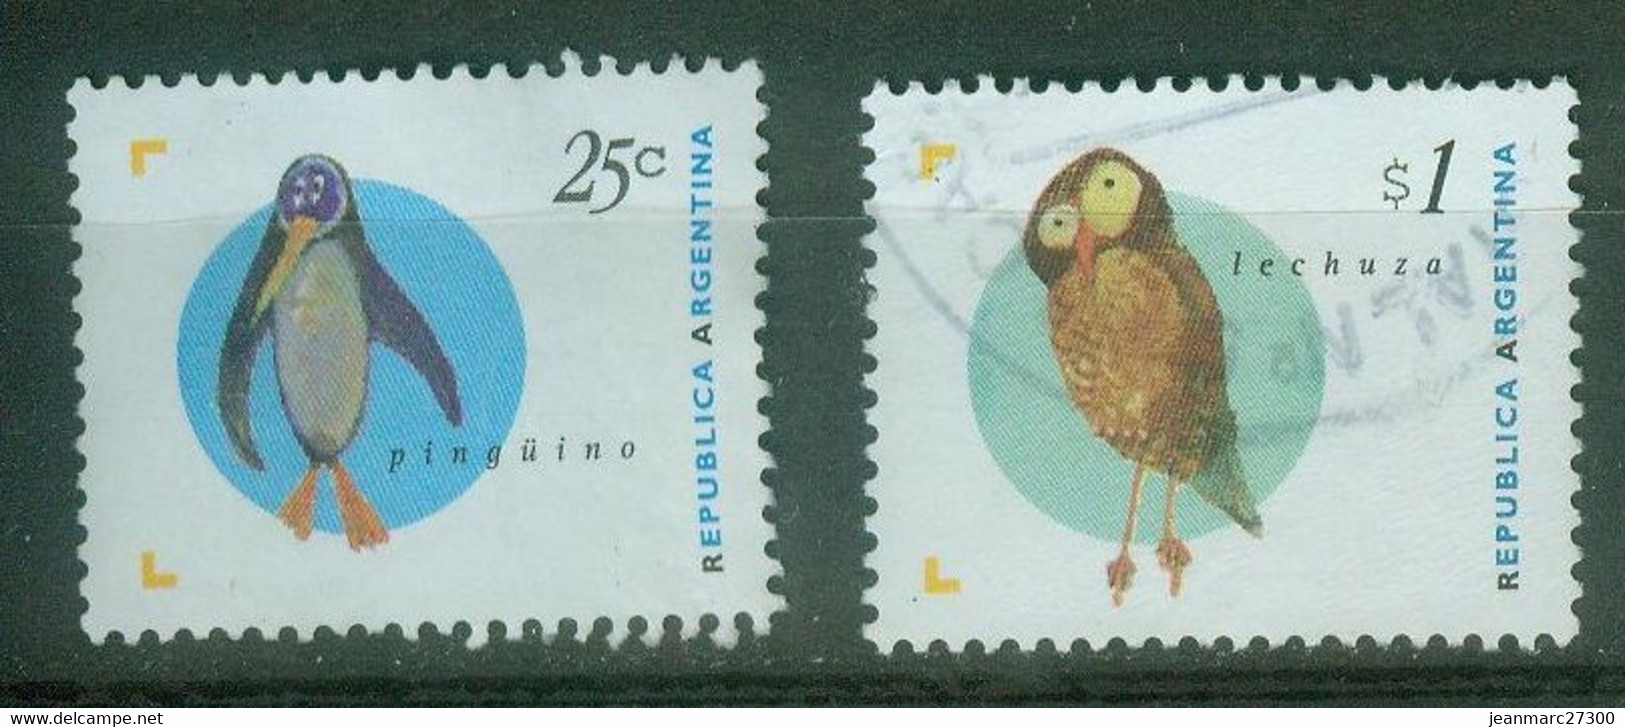 Amérique - Argentine YT N° 1879 1889 Oblitérés - Oblitérés